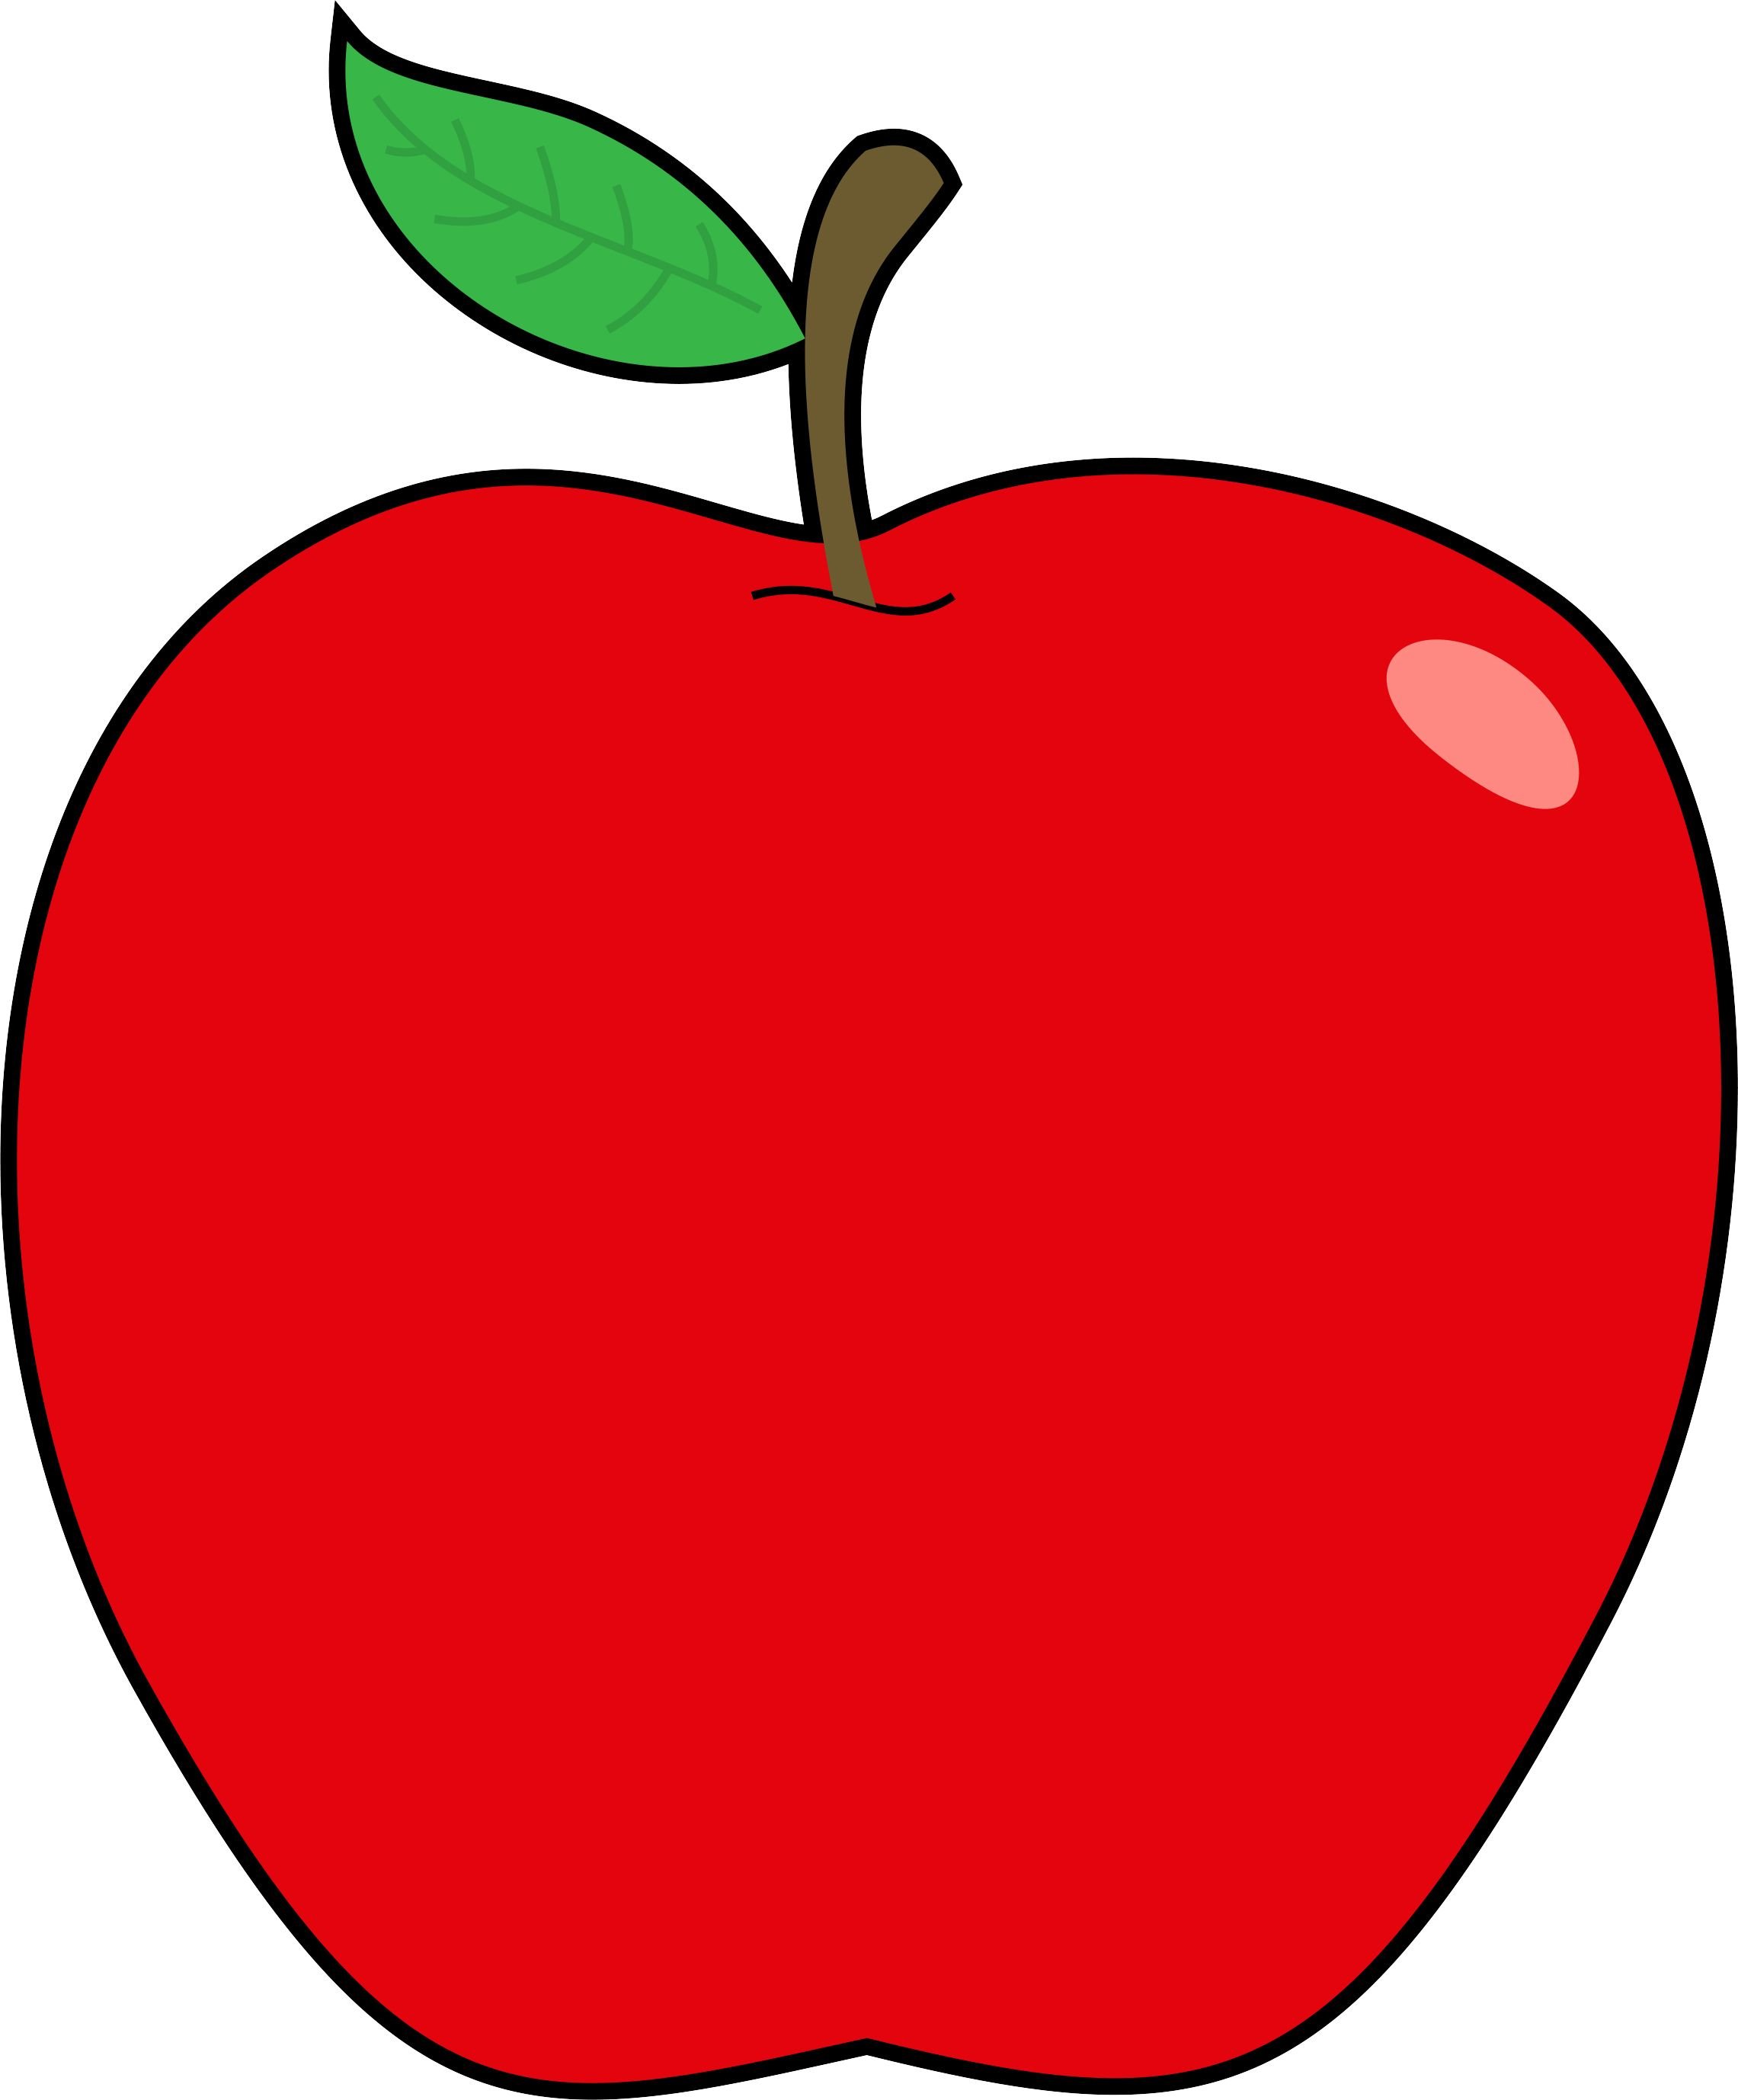 Яблоко картинка для детей